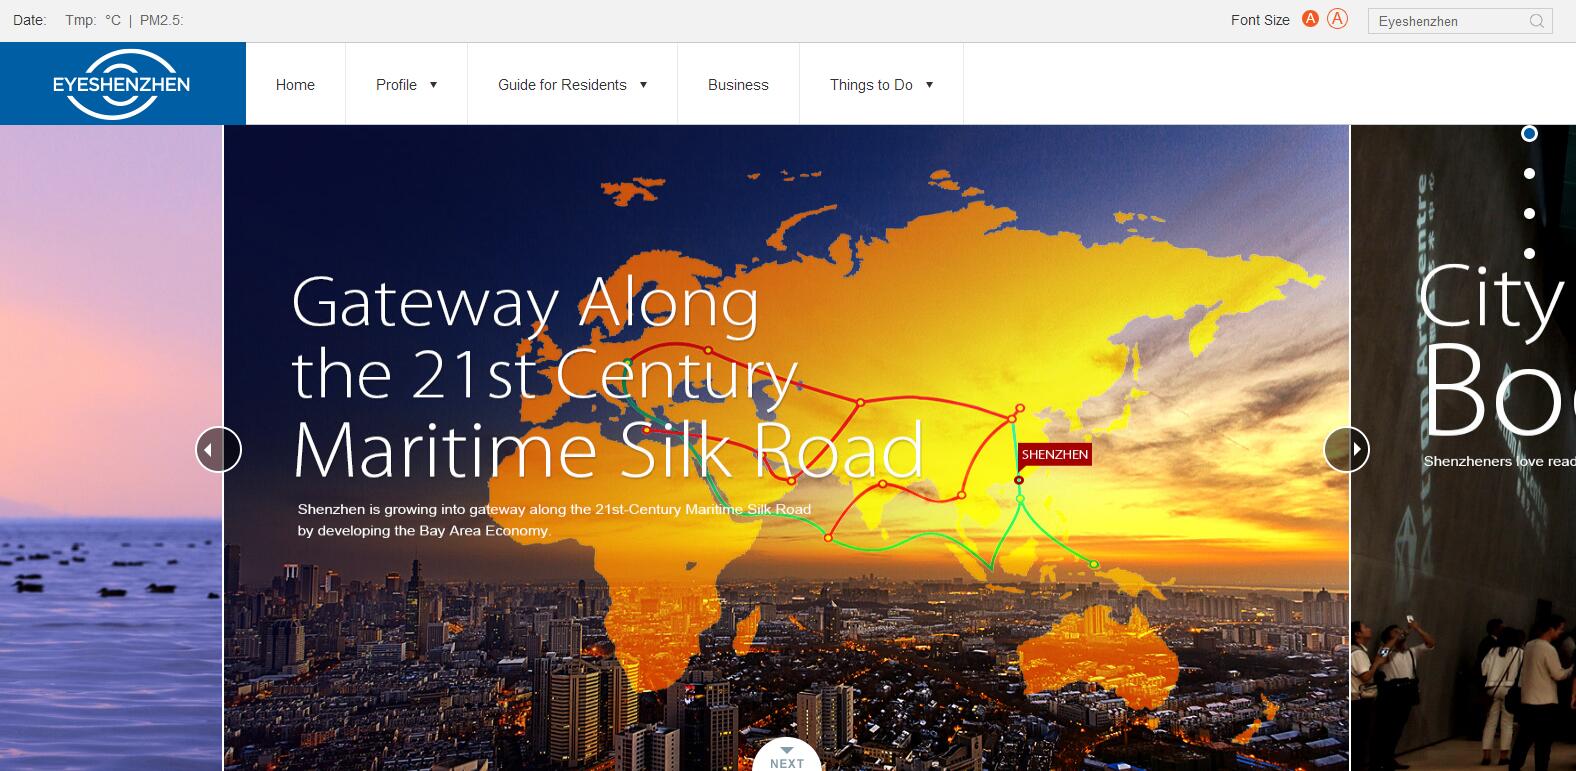 深圳首个英文门户网站上线 提升对外传播能力